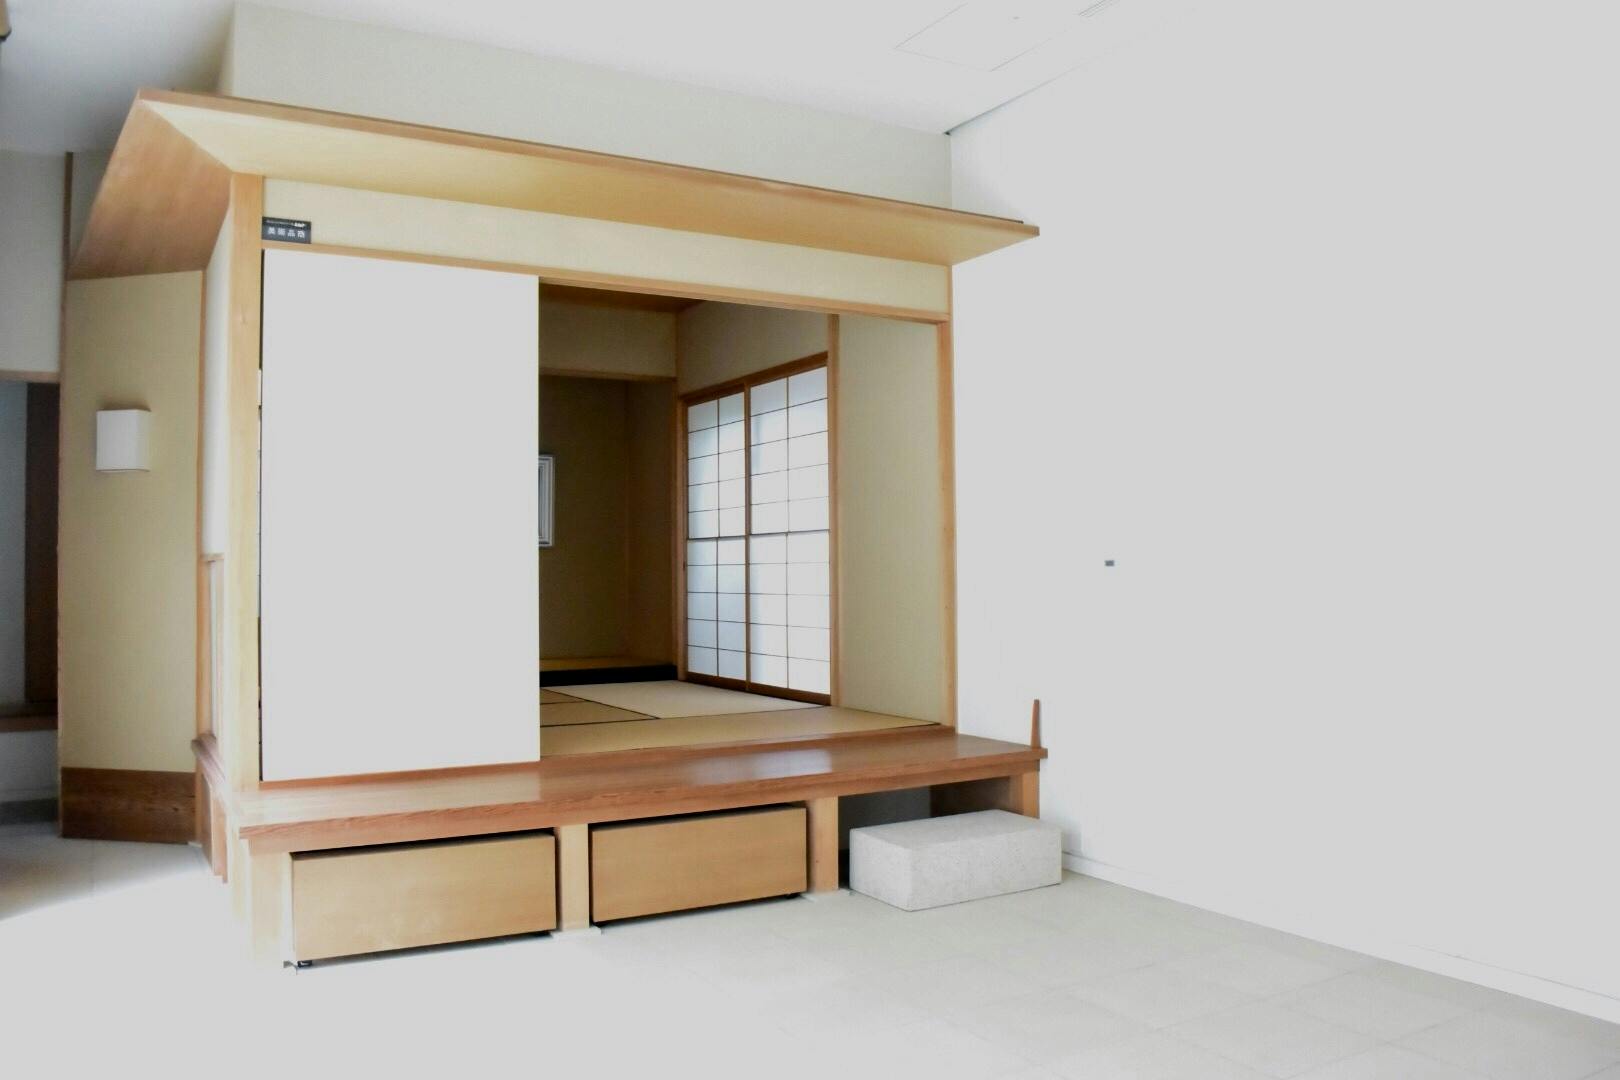 和テイストの部屋もあり、スペースにアクセントを出すことが可能です。